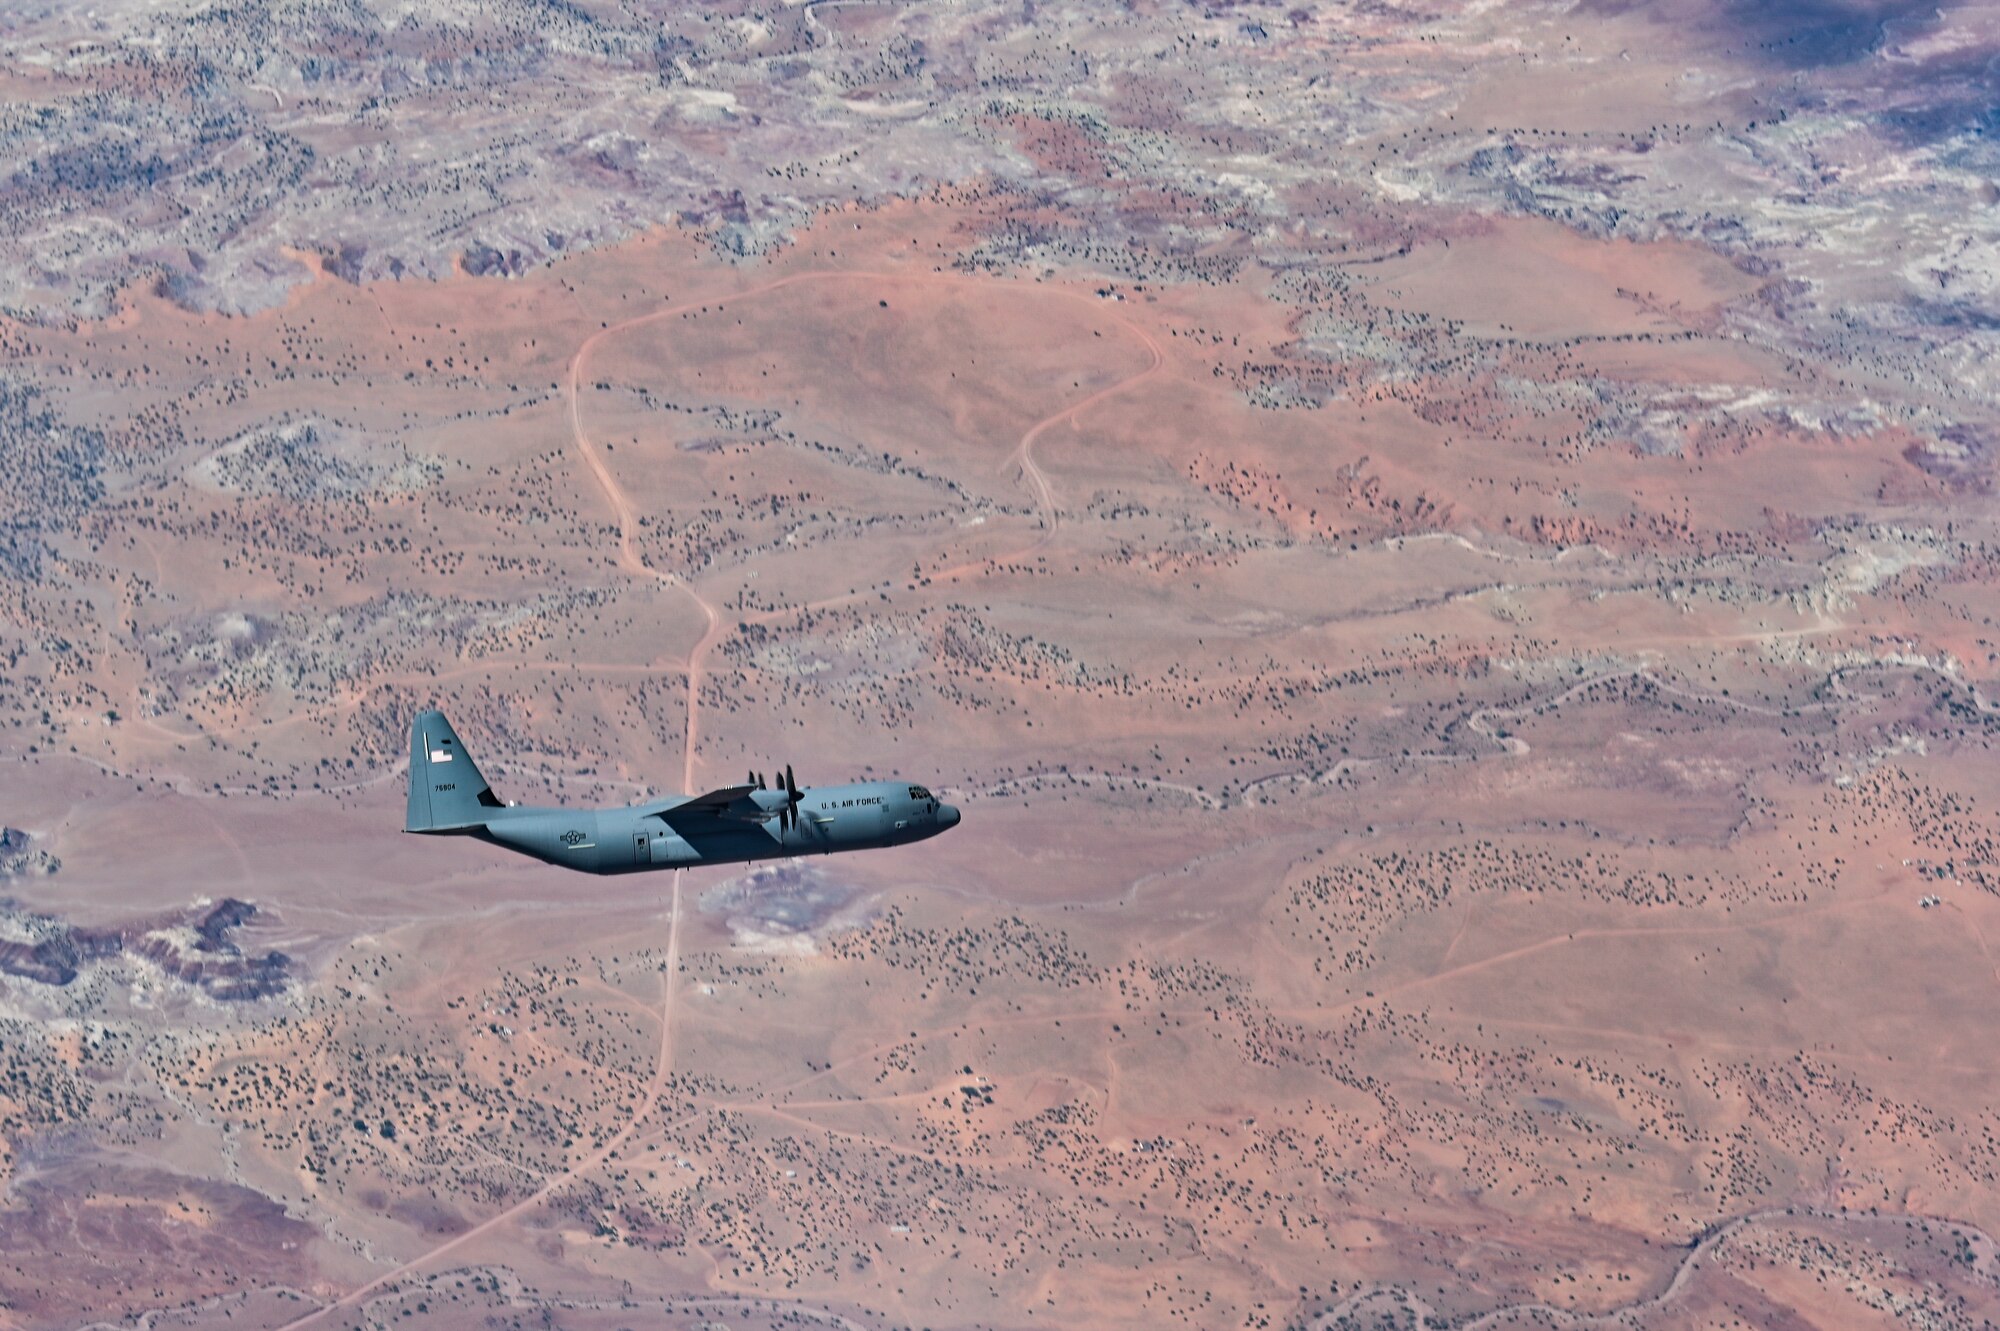 C-130 flying over desert